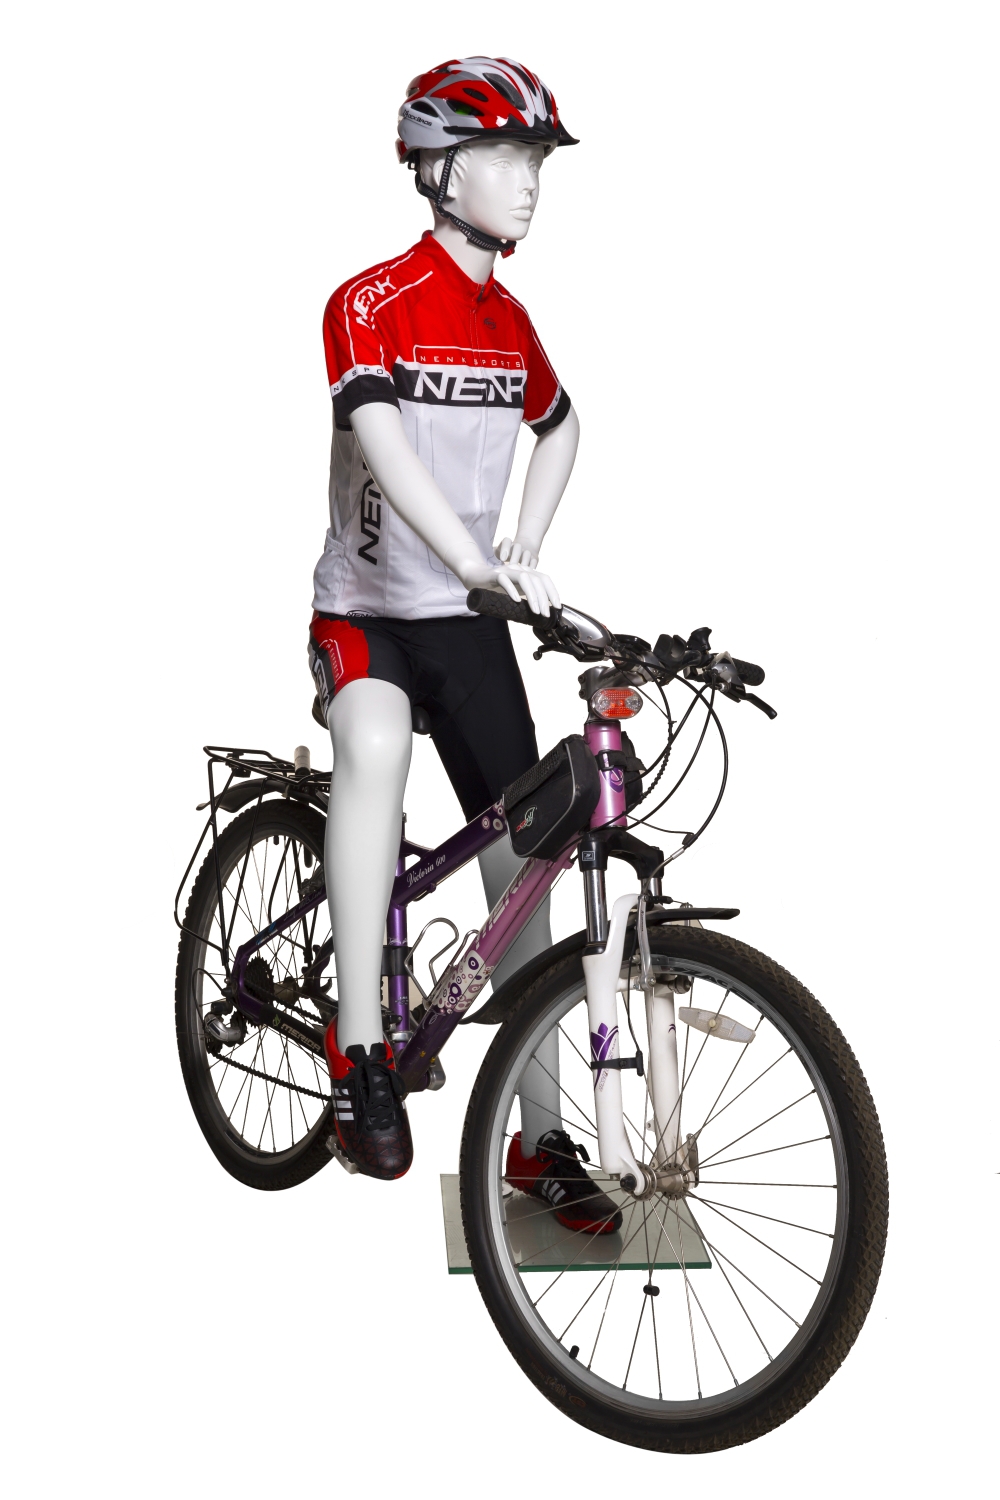 Schaufensterfigur SPORT Dame Radfahrerin mit skulpturiertem Kopf, stehende Position, Farbe weiß